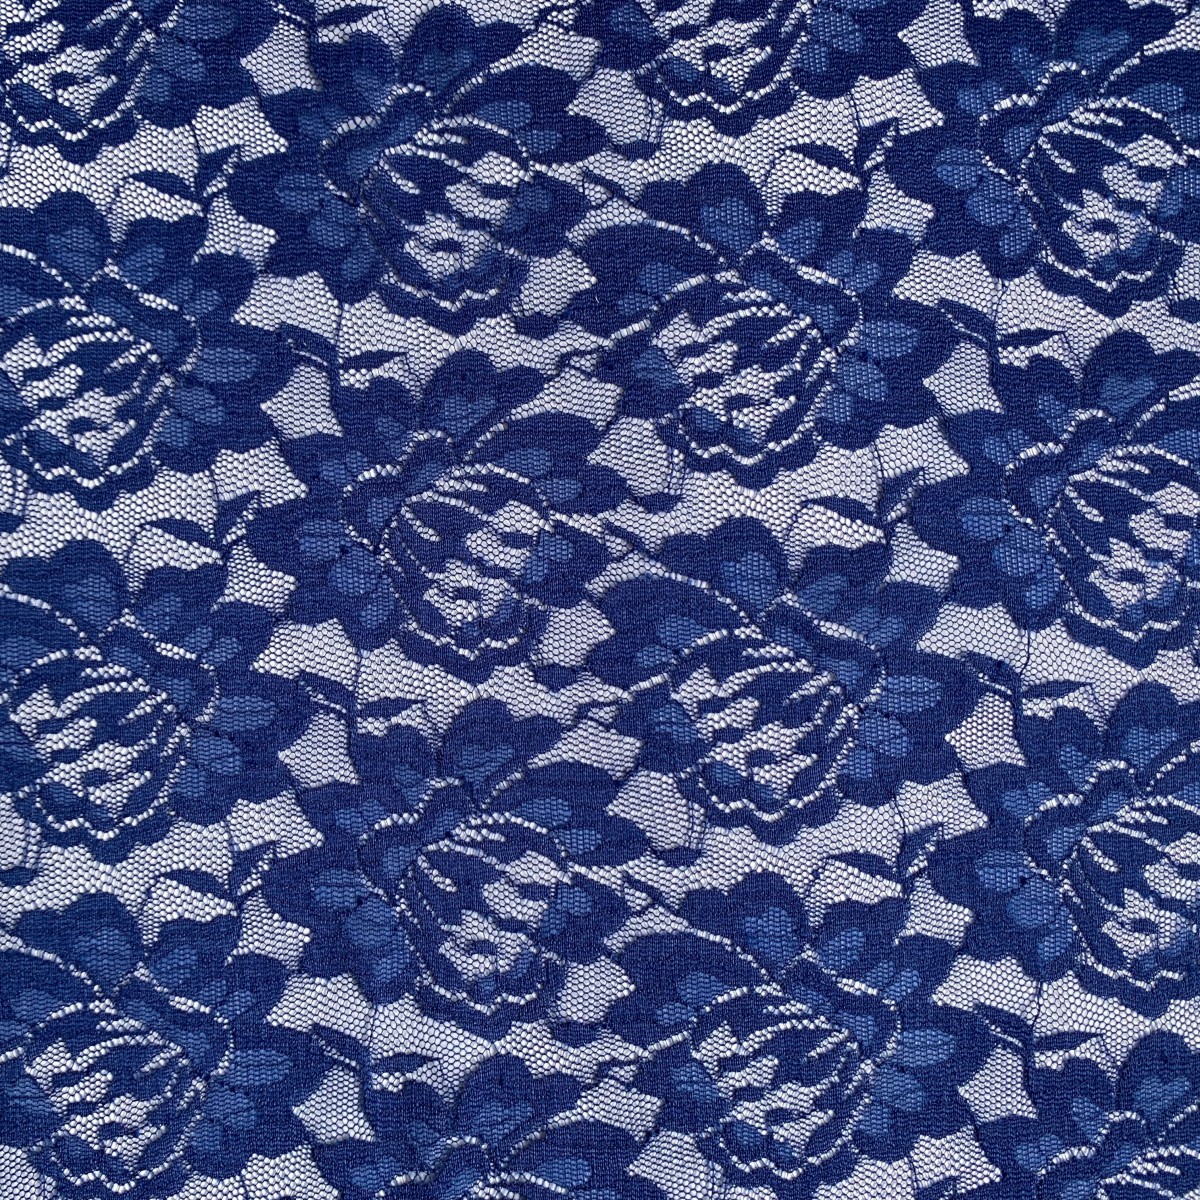 Royal Blue Stretch Lace Bolt Fabric (95% Nylon 5% Lycra)